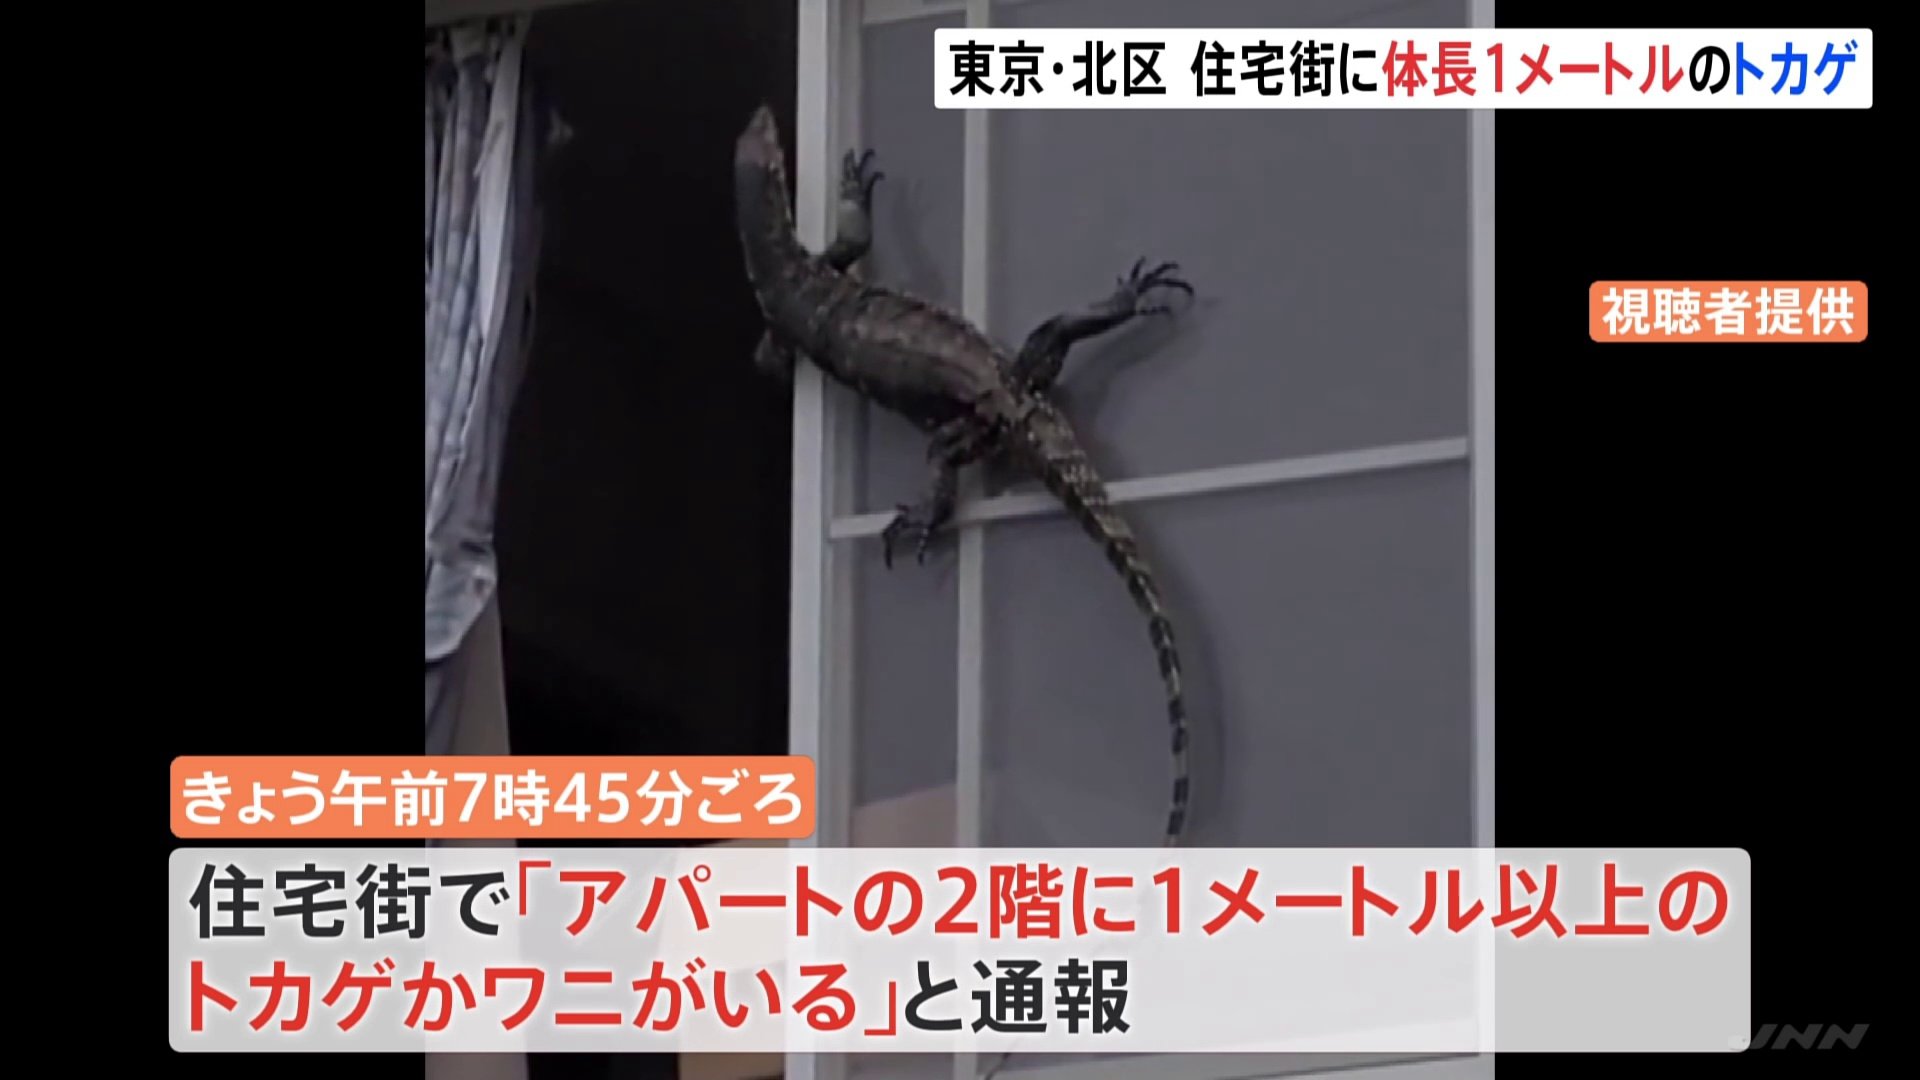 1メートル以上のトカゲかワニが 住宅街が一時騒然 ペットの1メートル超の大型トカゲが脱走するも警察が捕獲 東京 北区 Tbs News Dig